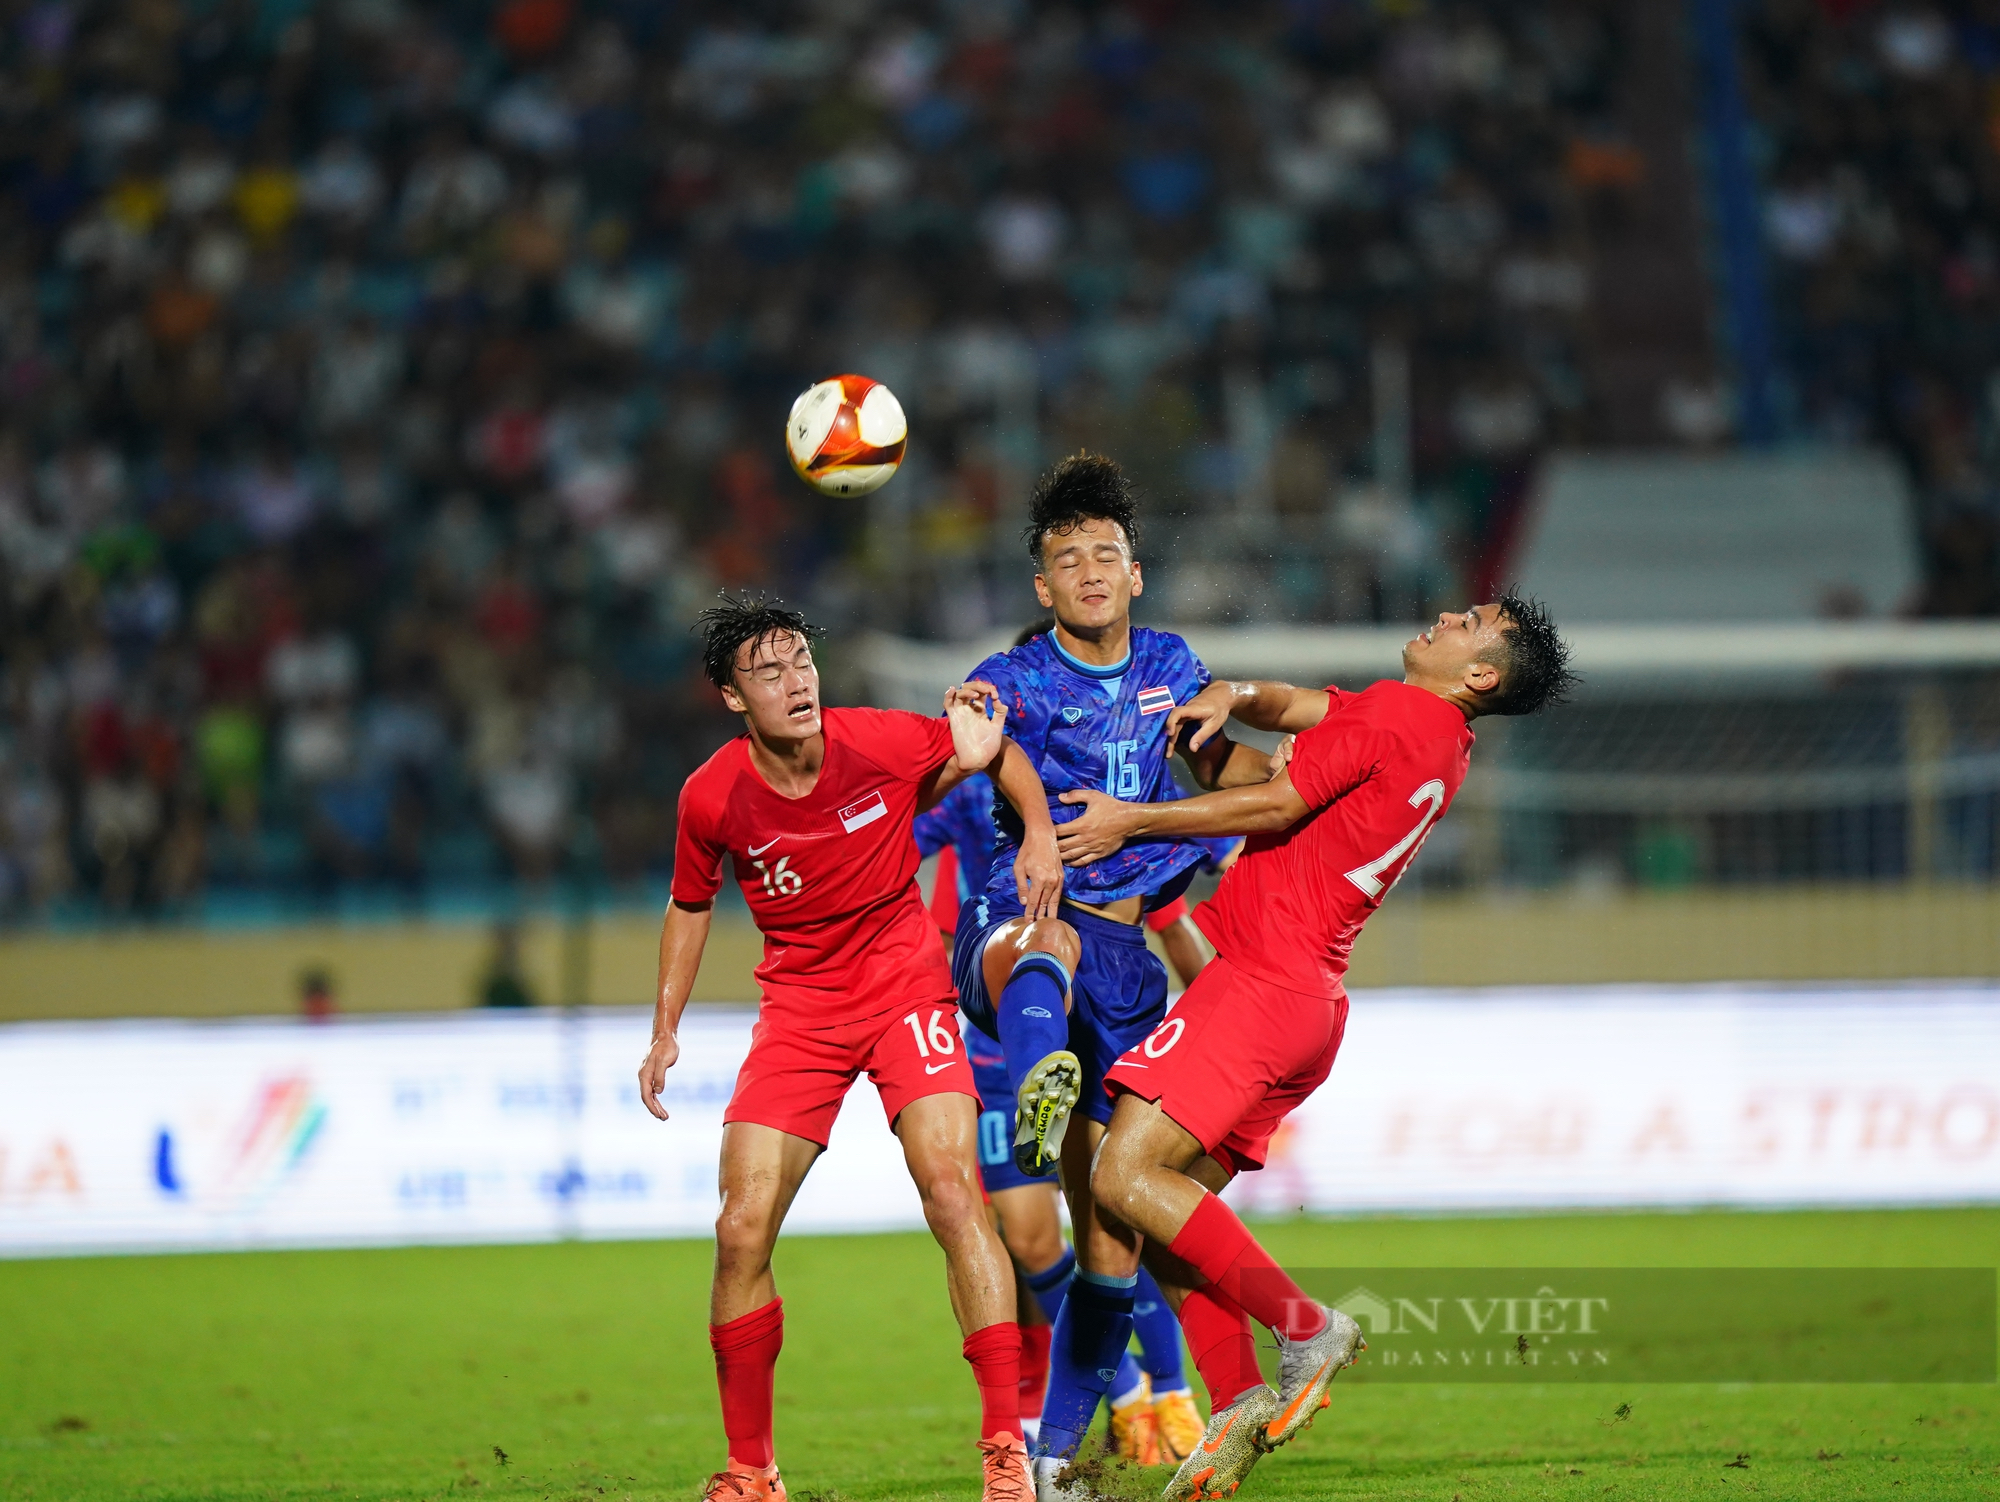 Thái Lan hạ Singapore 5-0 trên sân Thiên Trường - Ảnh 1.